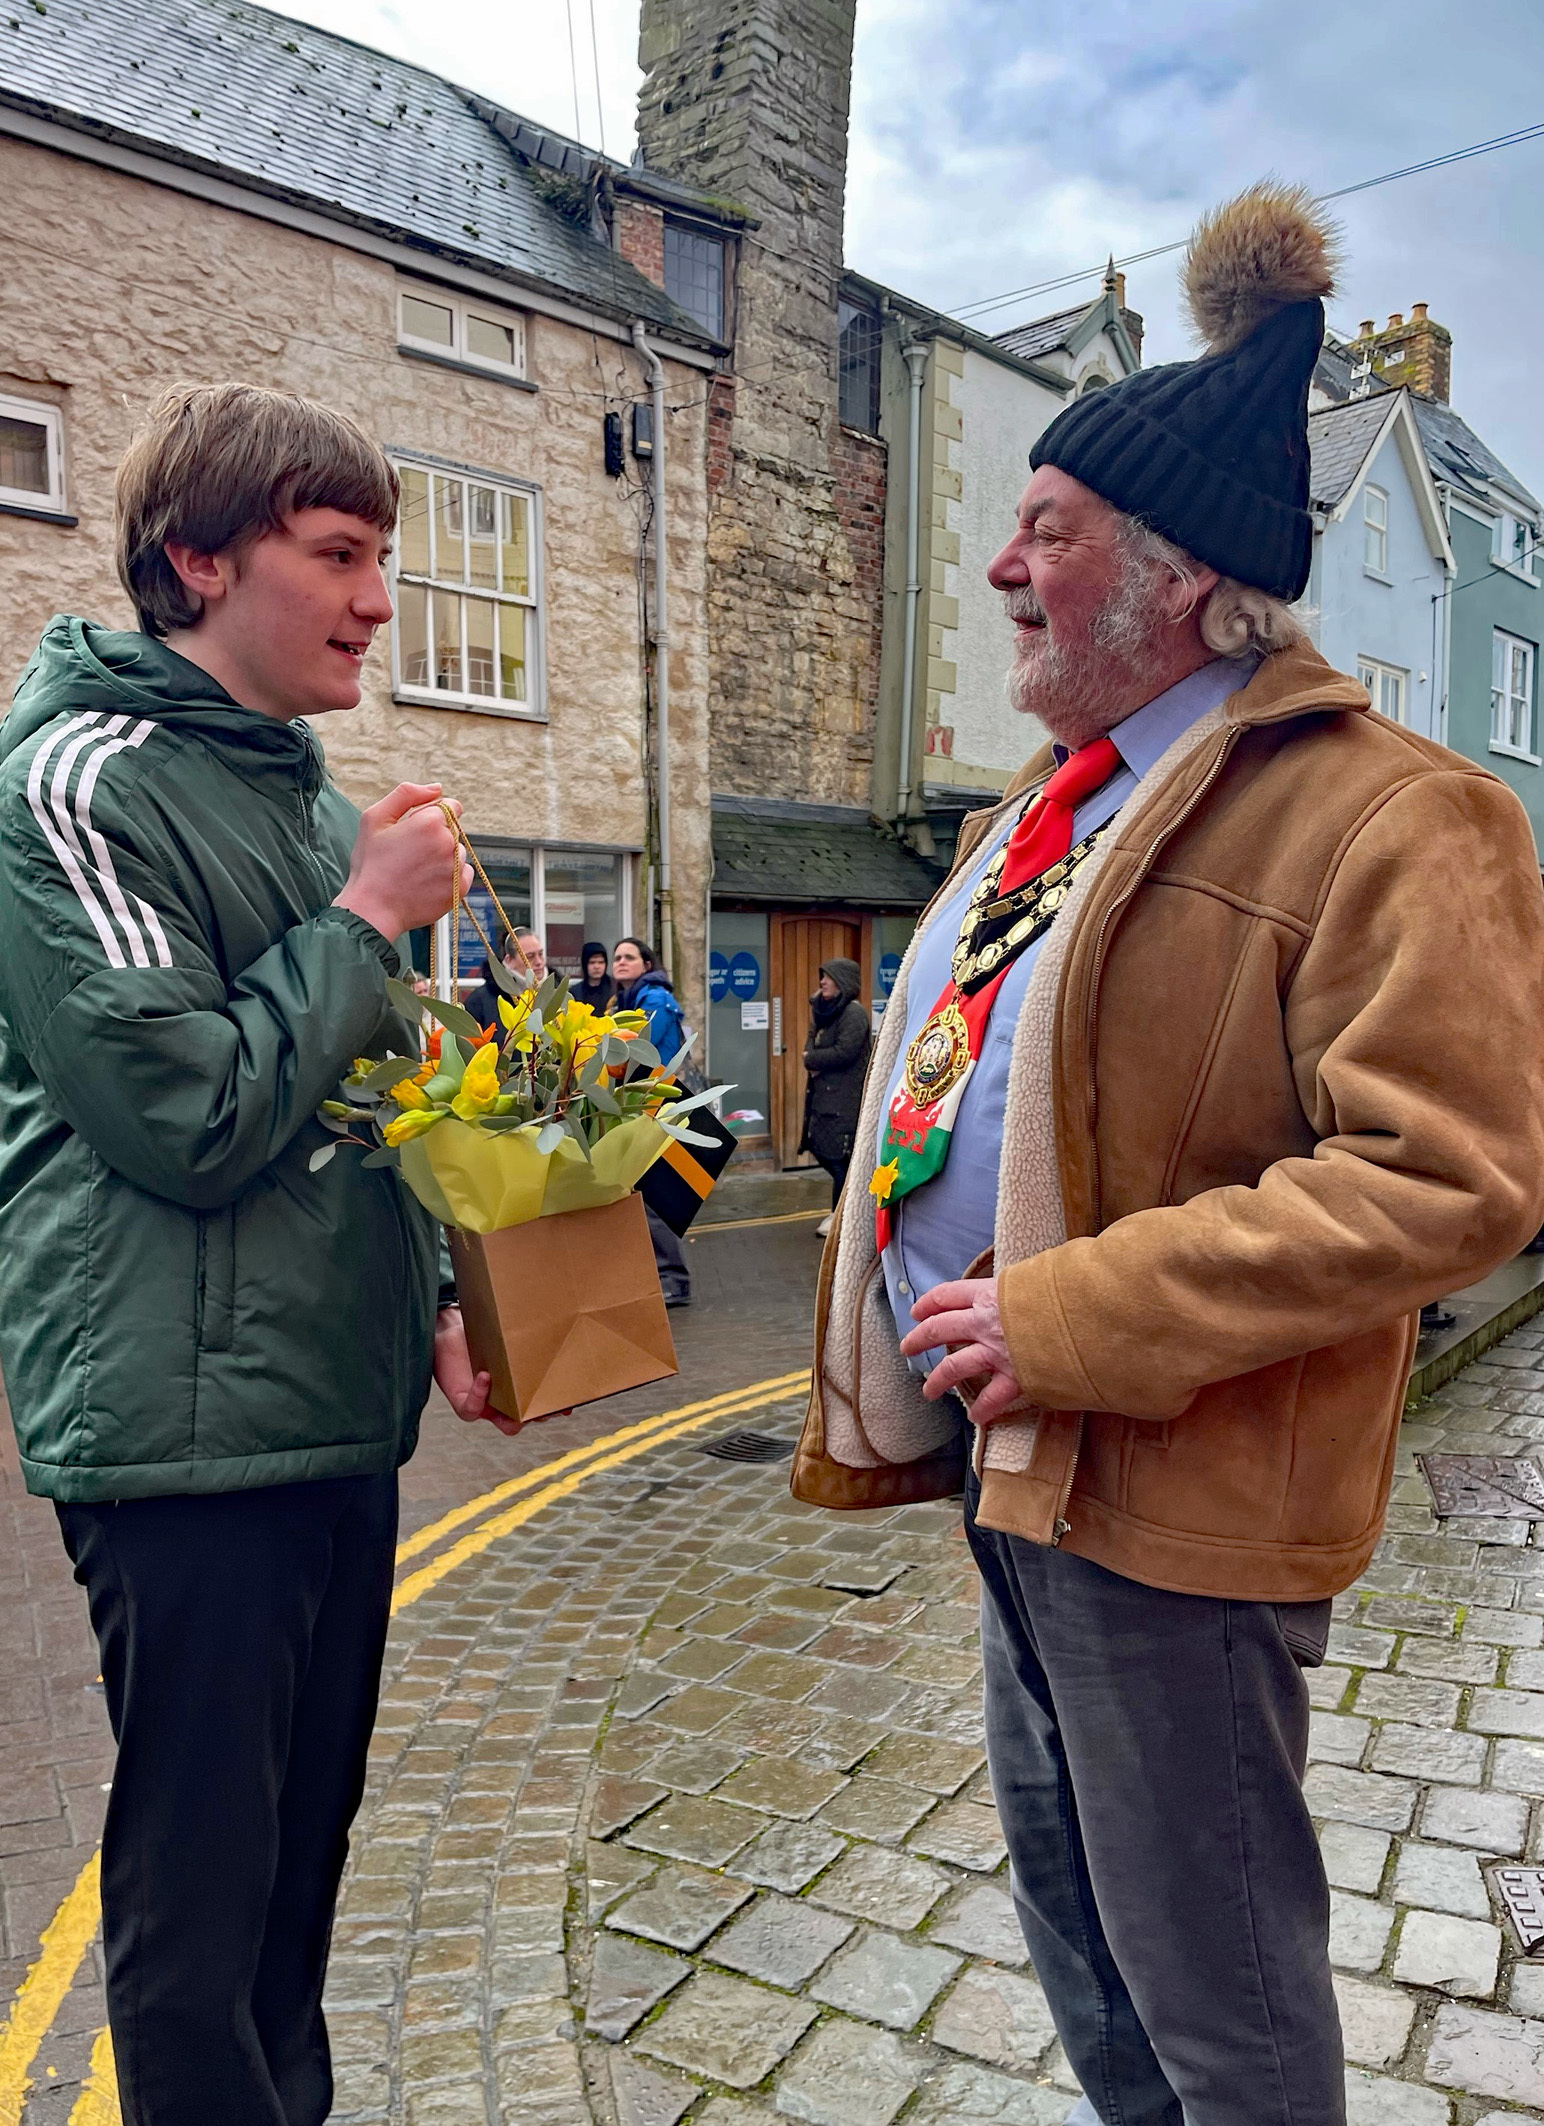 Ysgol Plas Brondyffryn pupil, Deiniol Horner, 15, was delighted to meet Denbigh Town Mayor, Alyn Ashworth and presented flowers to him. 